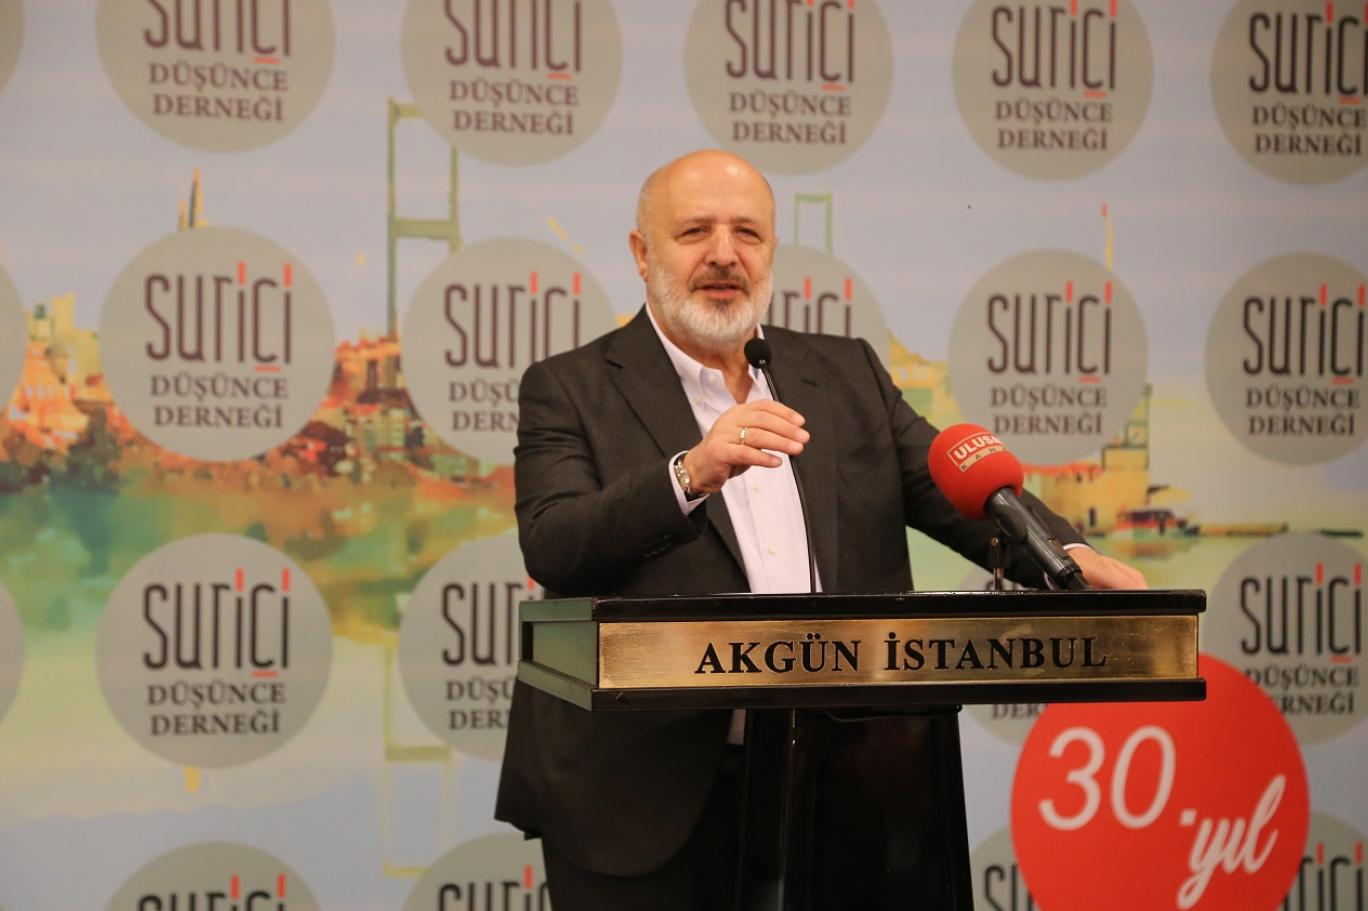 Ethem Sancak: Kılıçdaroğlu benim sayemde politikacı oldu, ben referans oldum